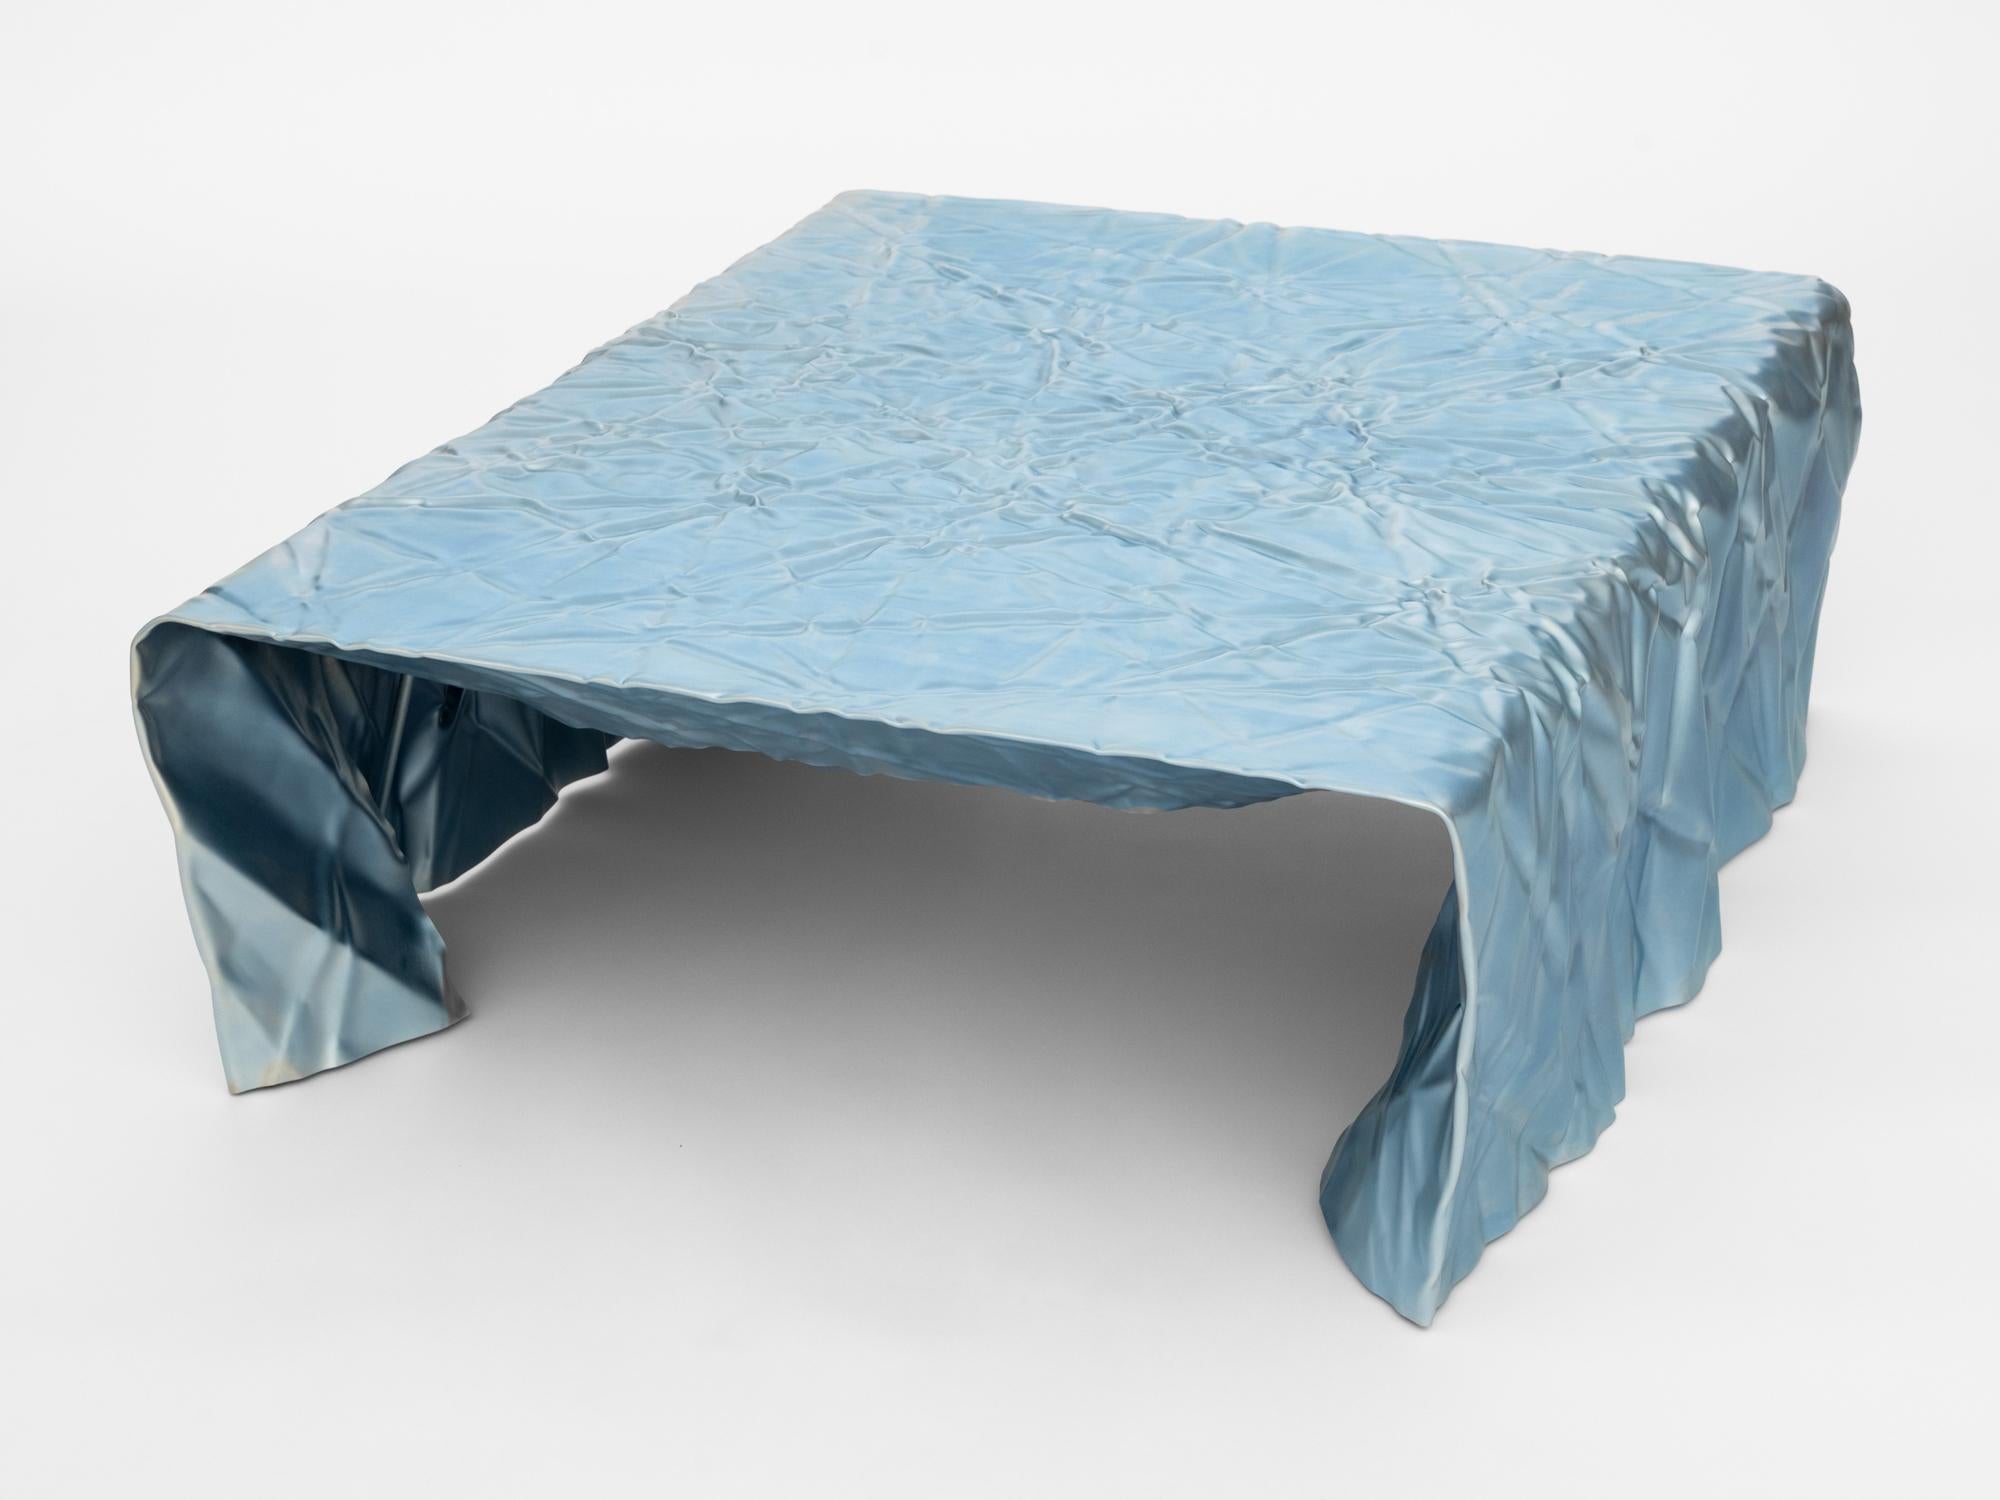 Table basse en acier froissé du designer Christopher Prinz, basé à Omaha, qui obtient cette texture inhabituelle en froissant à plusieurs reprises une fine feuille d'acier, ce qui donne une forme solide, rigide et unique. Les pieds de nivellement